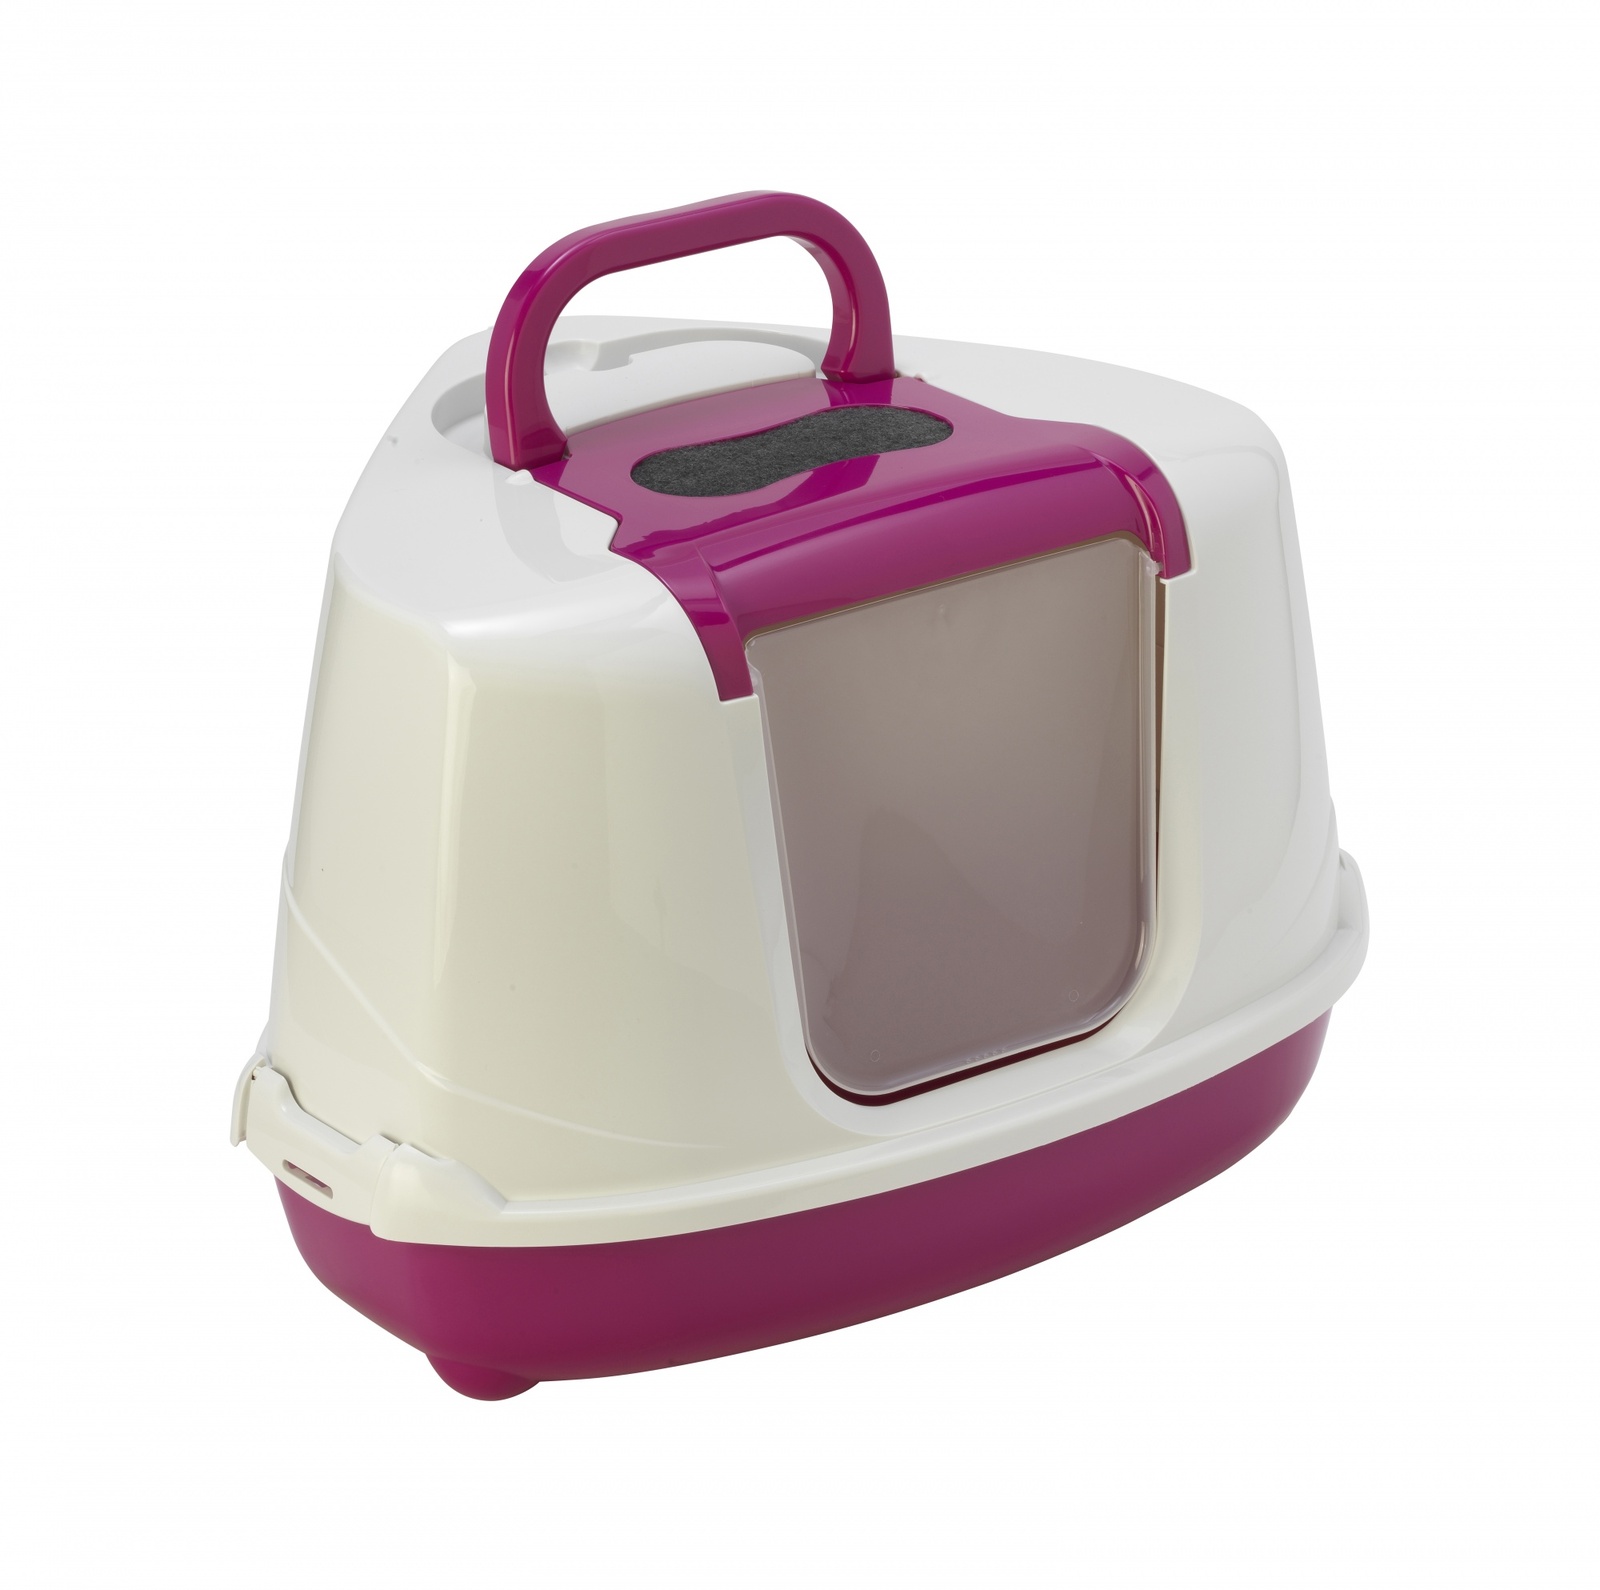 Туалет-домик угловой Flip с угольным фильтром, 55х45х38см, ярко-розовый (1,6 кг) Moderna Туалет-домик угловой Flip с угольным фильтром, 55х45х38см, ярко-розовый (1,6 кг) - фото 3